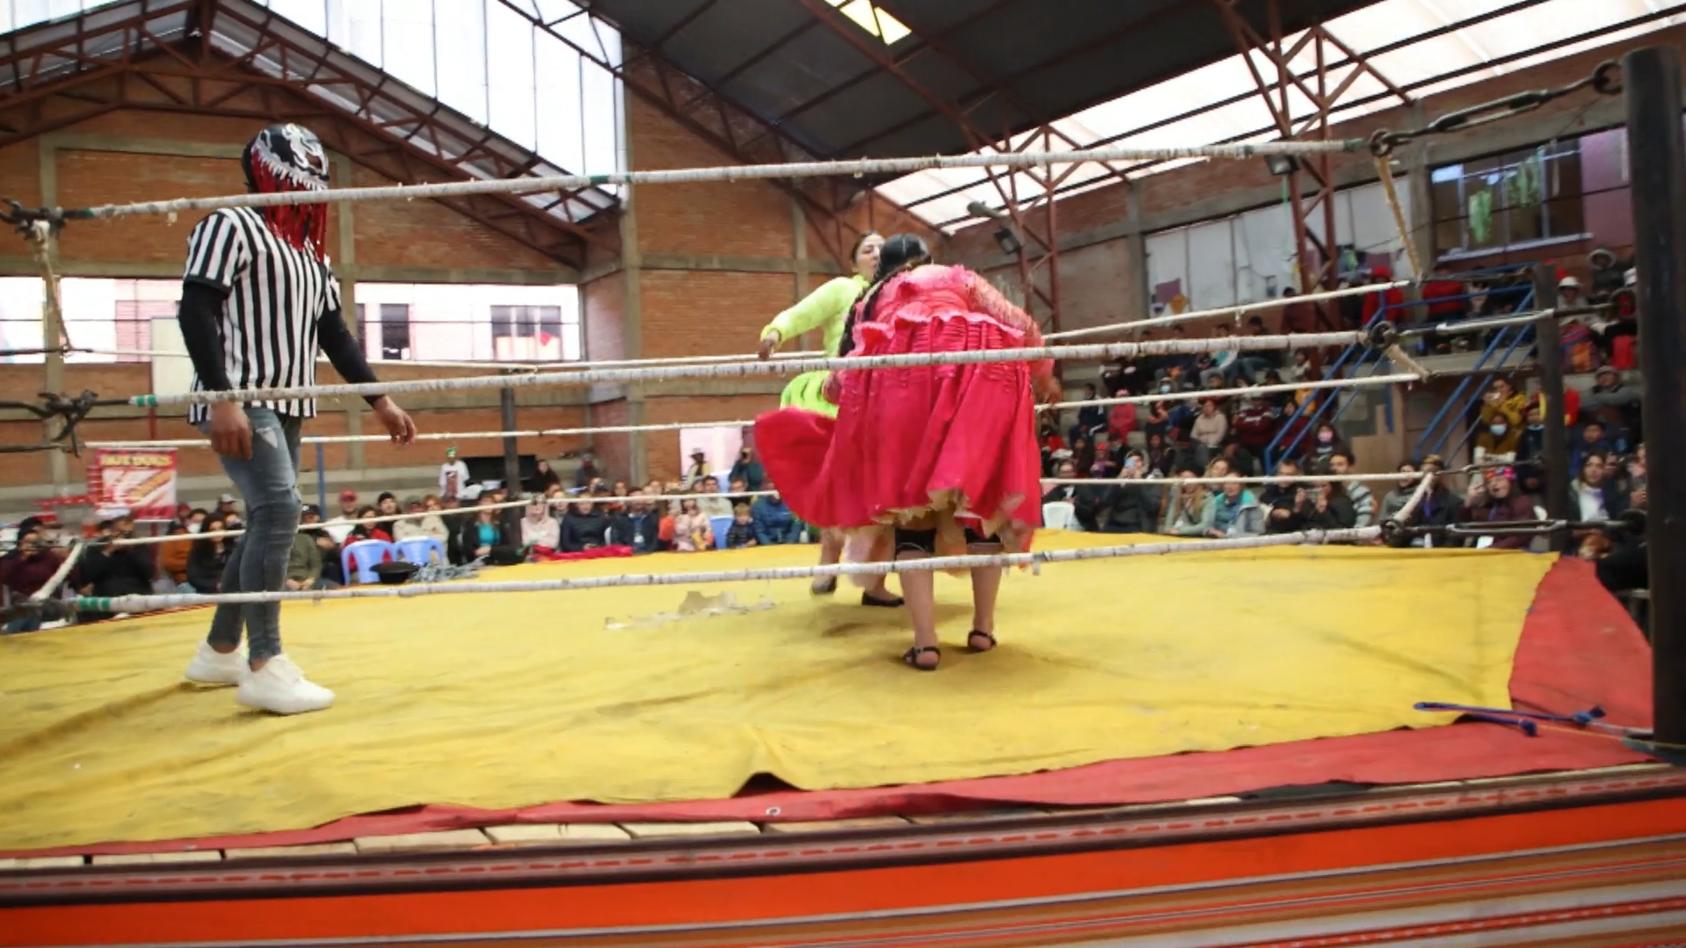 boliviens-cholitas-knallharte-wrestler-frauen-im-ring